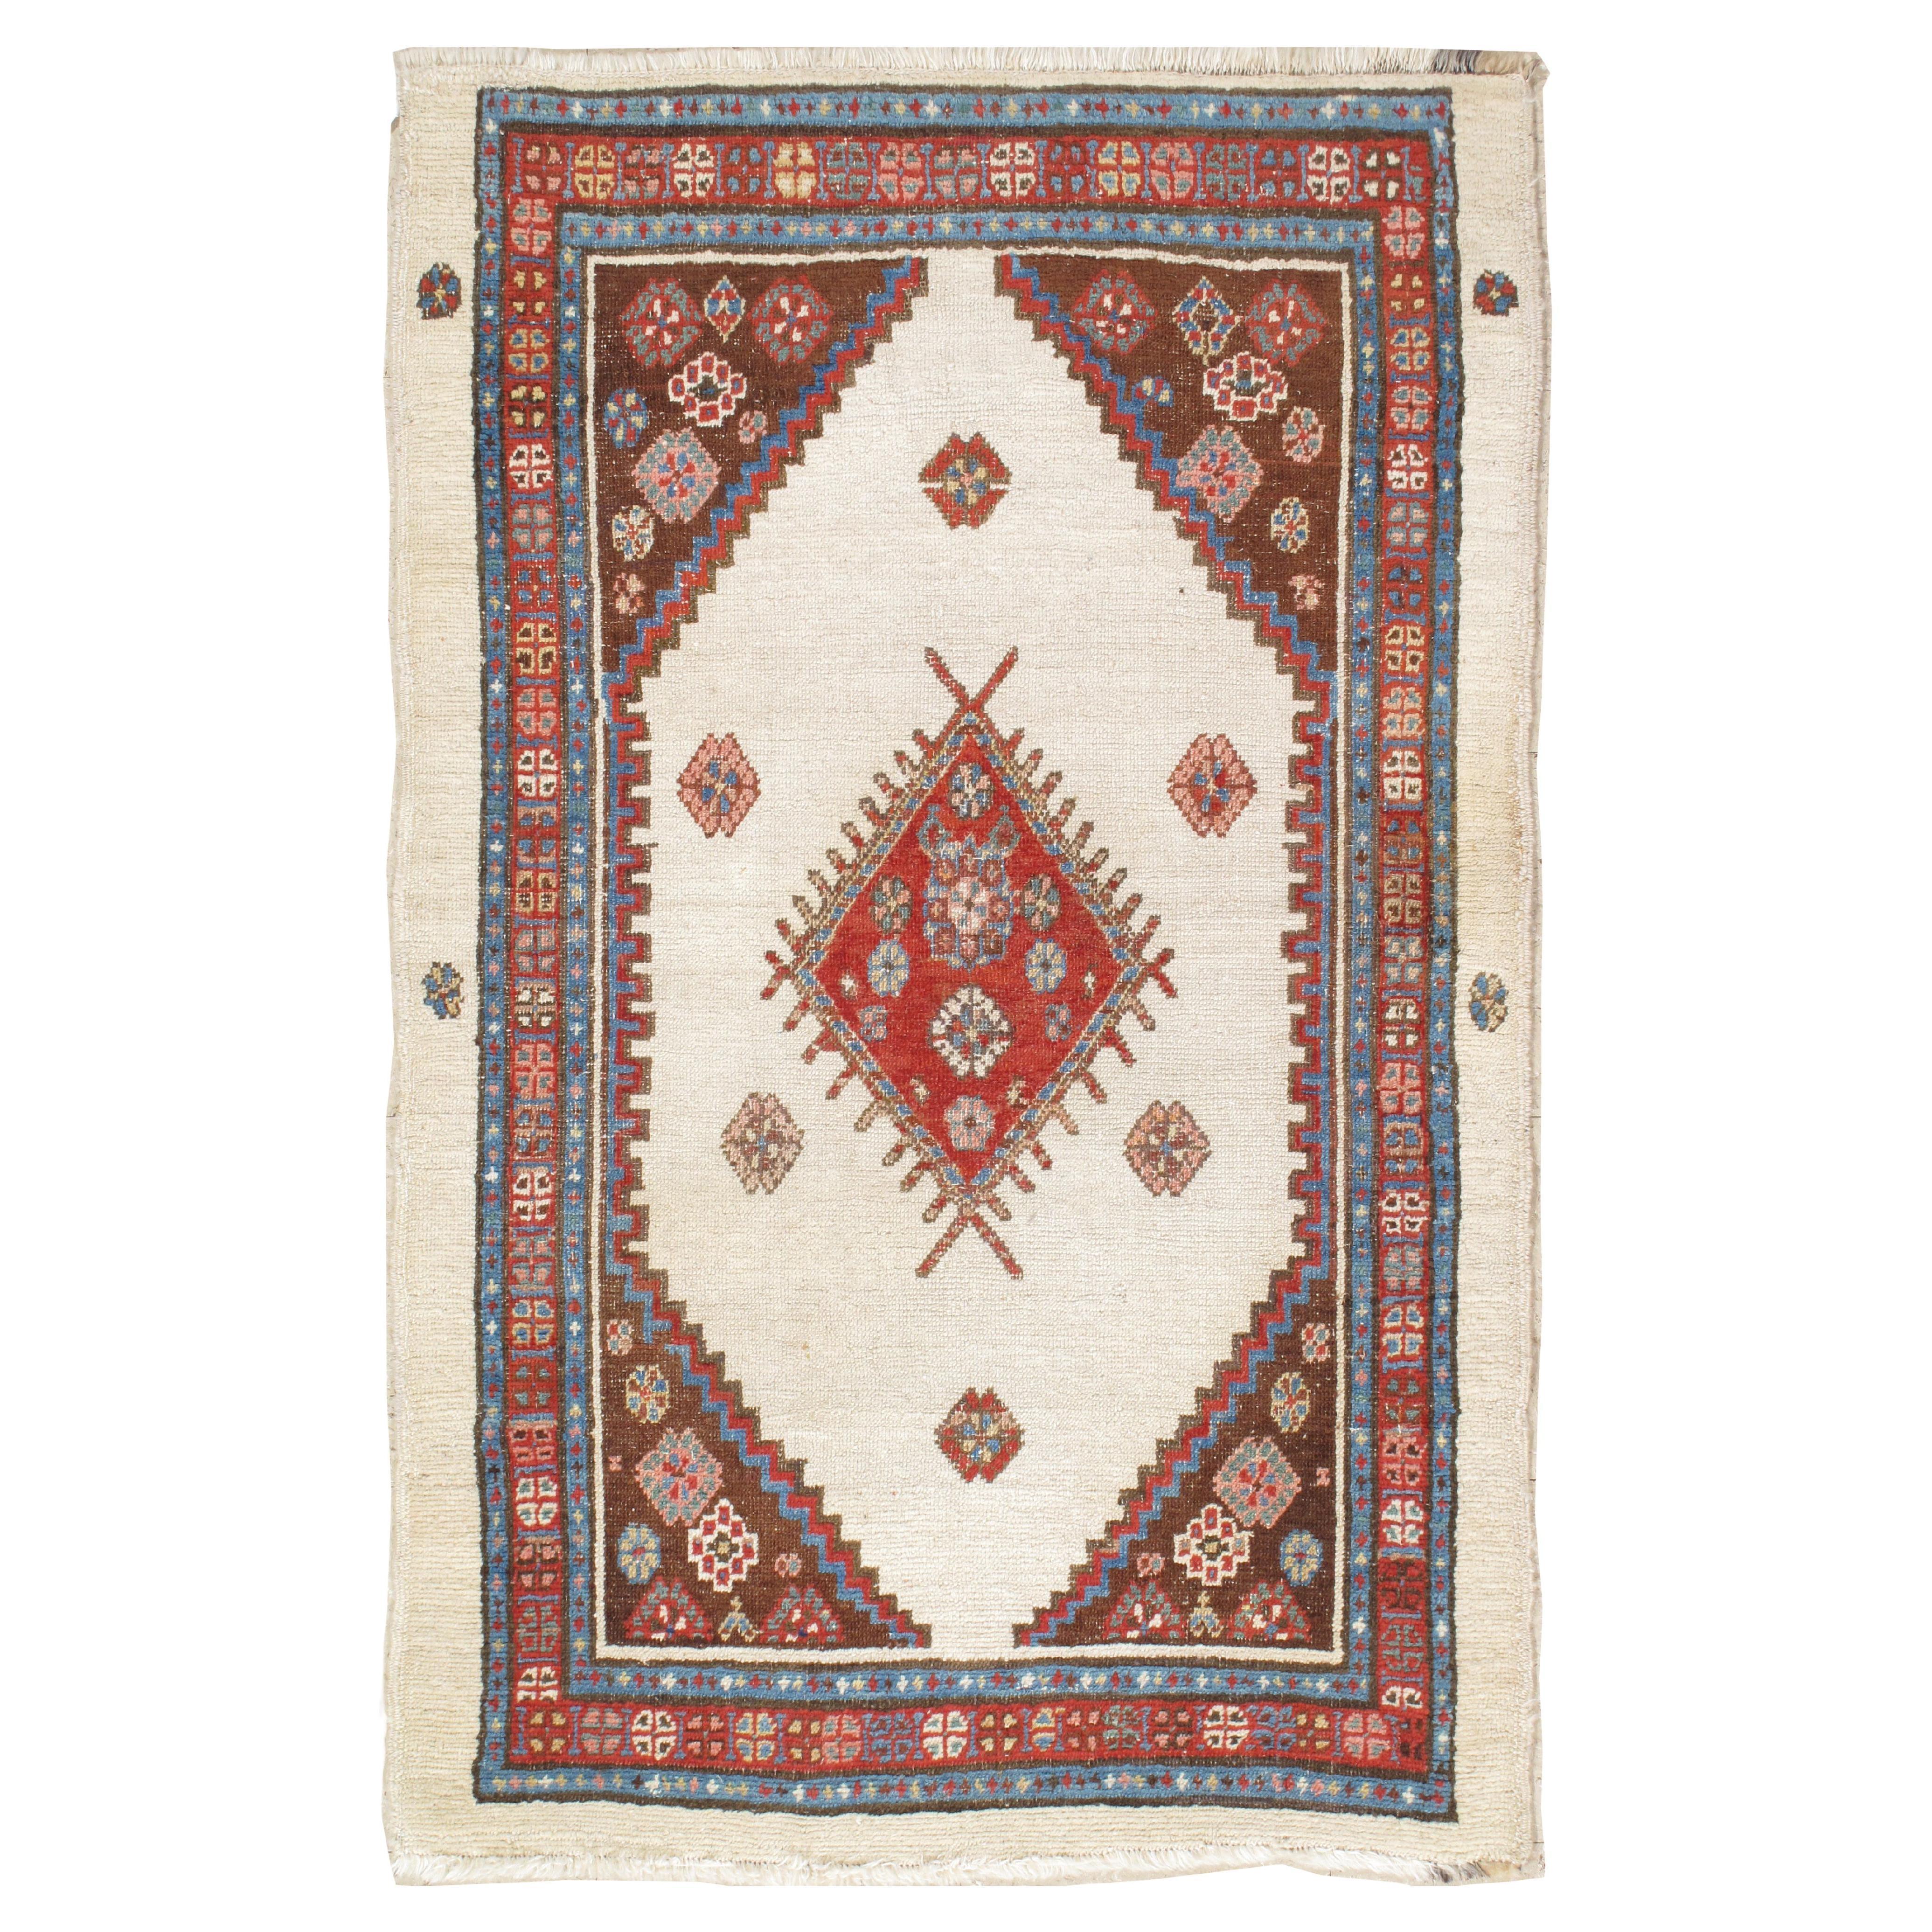 Antiker persischer Bakhshaish-Teppich, handgefertigter orientalischer Wollteppich, elfenbeinfarben und rostfarben